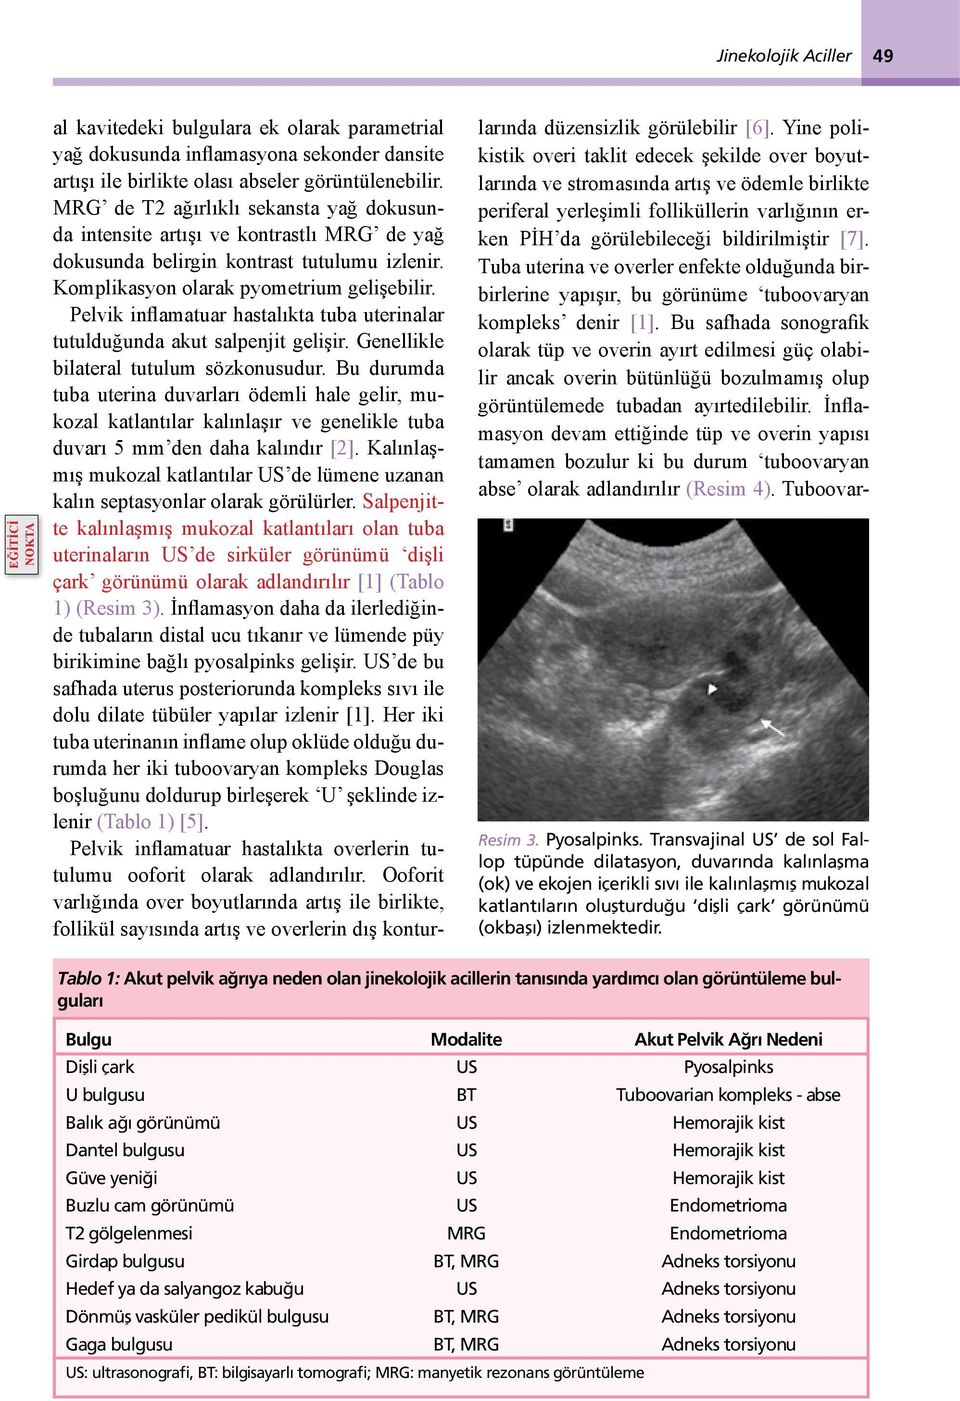 Pelvik inflamatuar hastalıkta tuba uterinalar tutulduğunda akut salpenjit gelişir. Genellikle bilateral tutulum sözkonusudur.